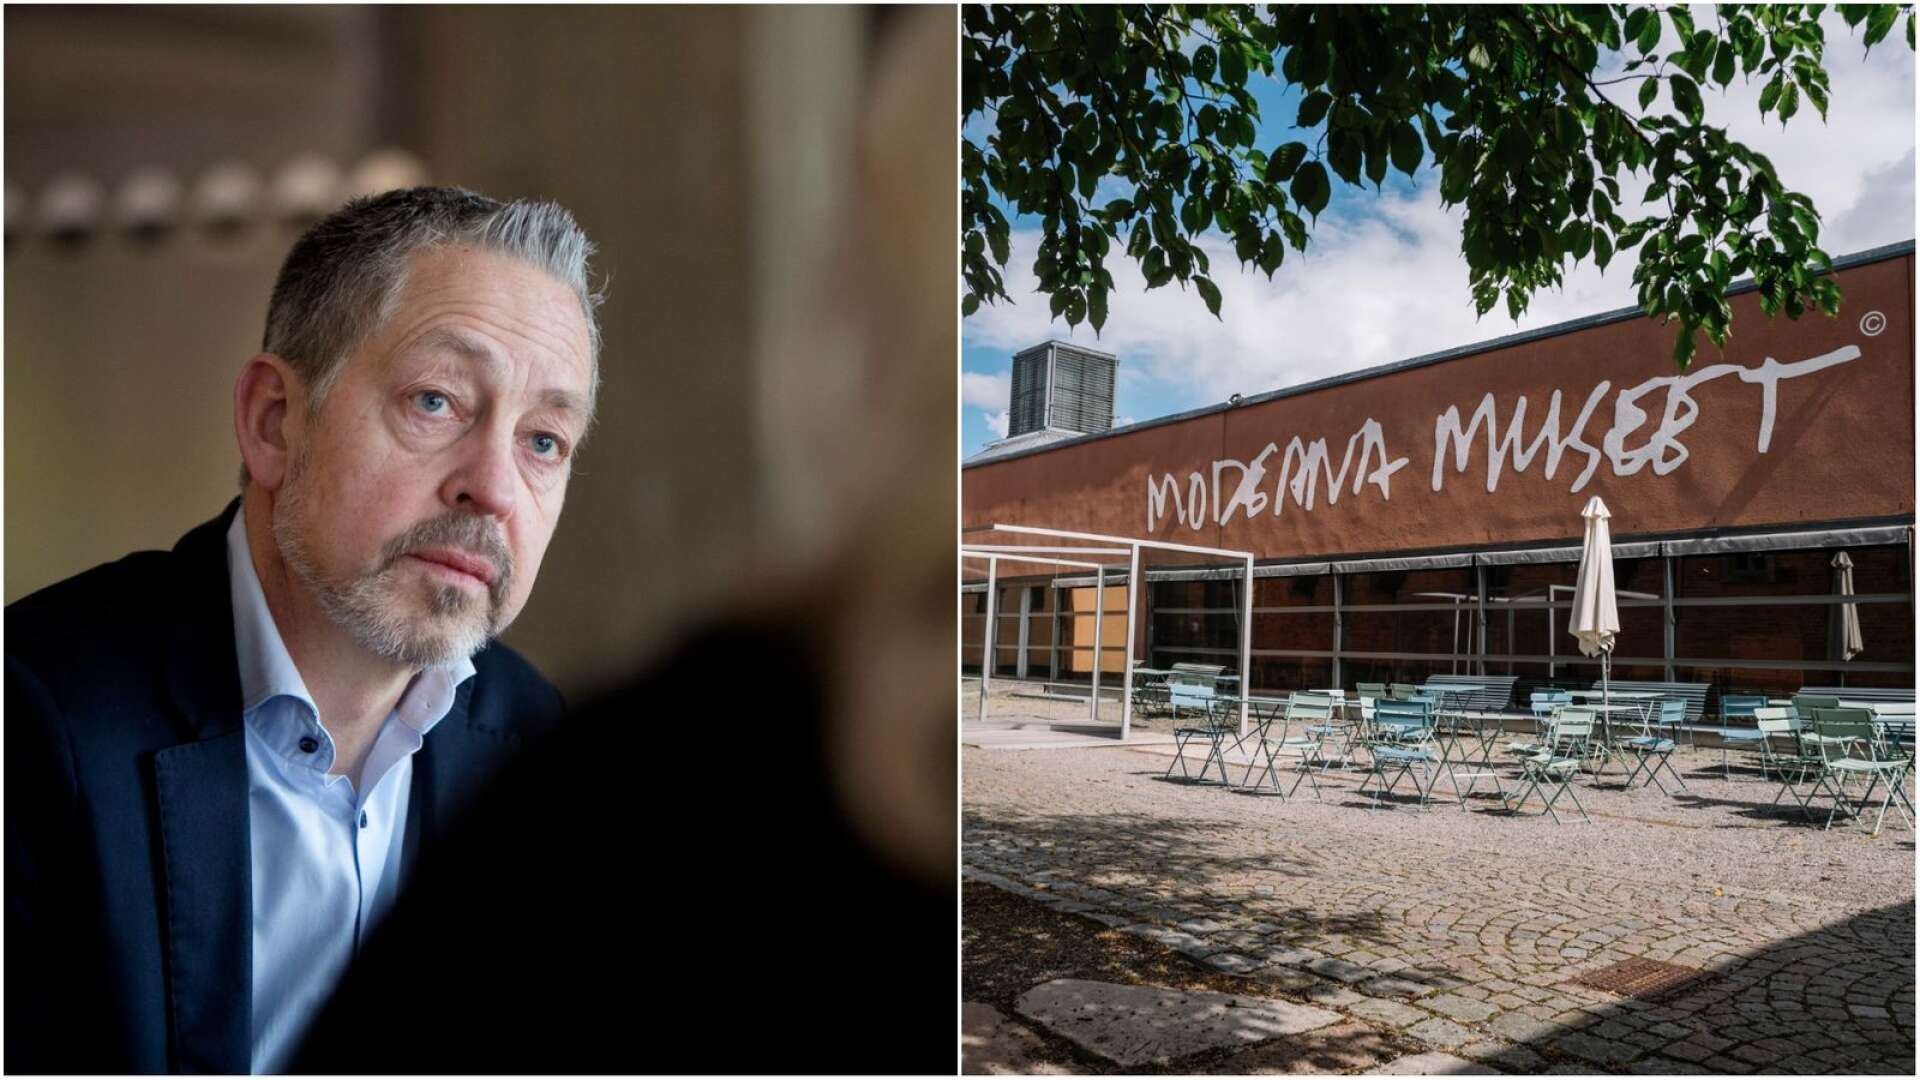 Värmländska riksdagsledamoten Lars Mejern Larsson ger sig in i diskussionen om var Moderna museet gör sina konstinköp.